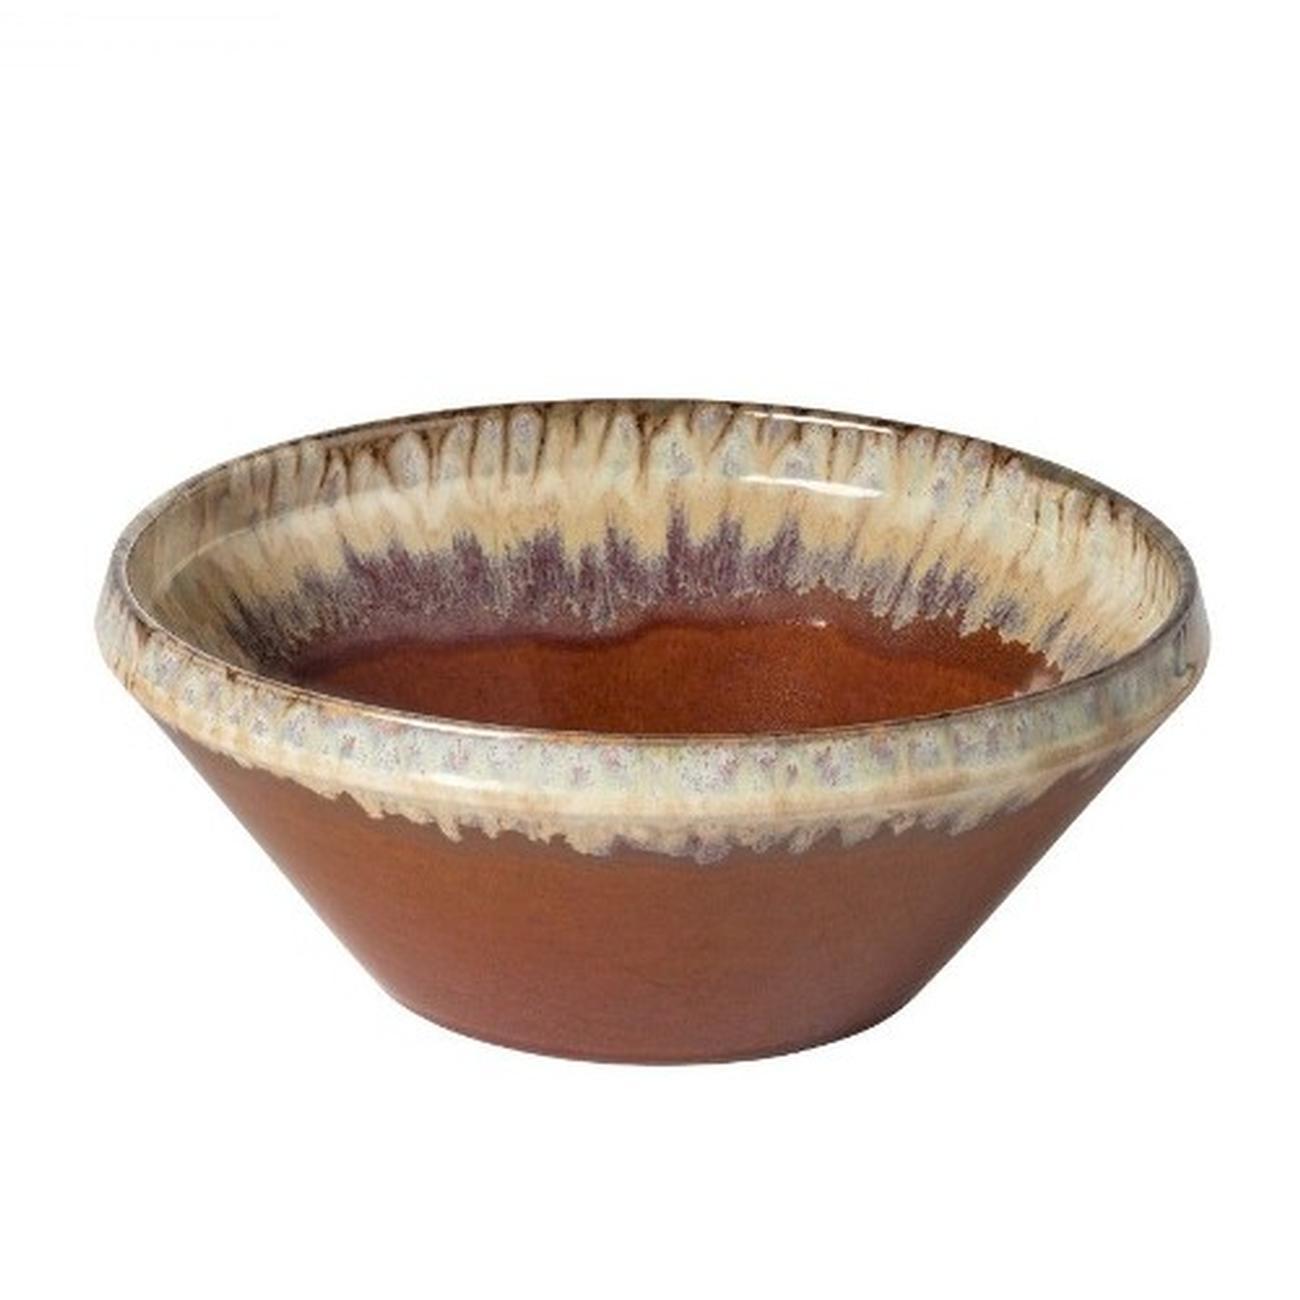 casafina-poterie-salad-bowl-caramel-latte-32cm - Casafina Poterie Serving Bowl 32cm